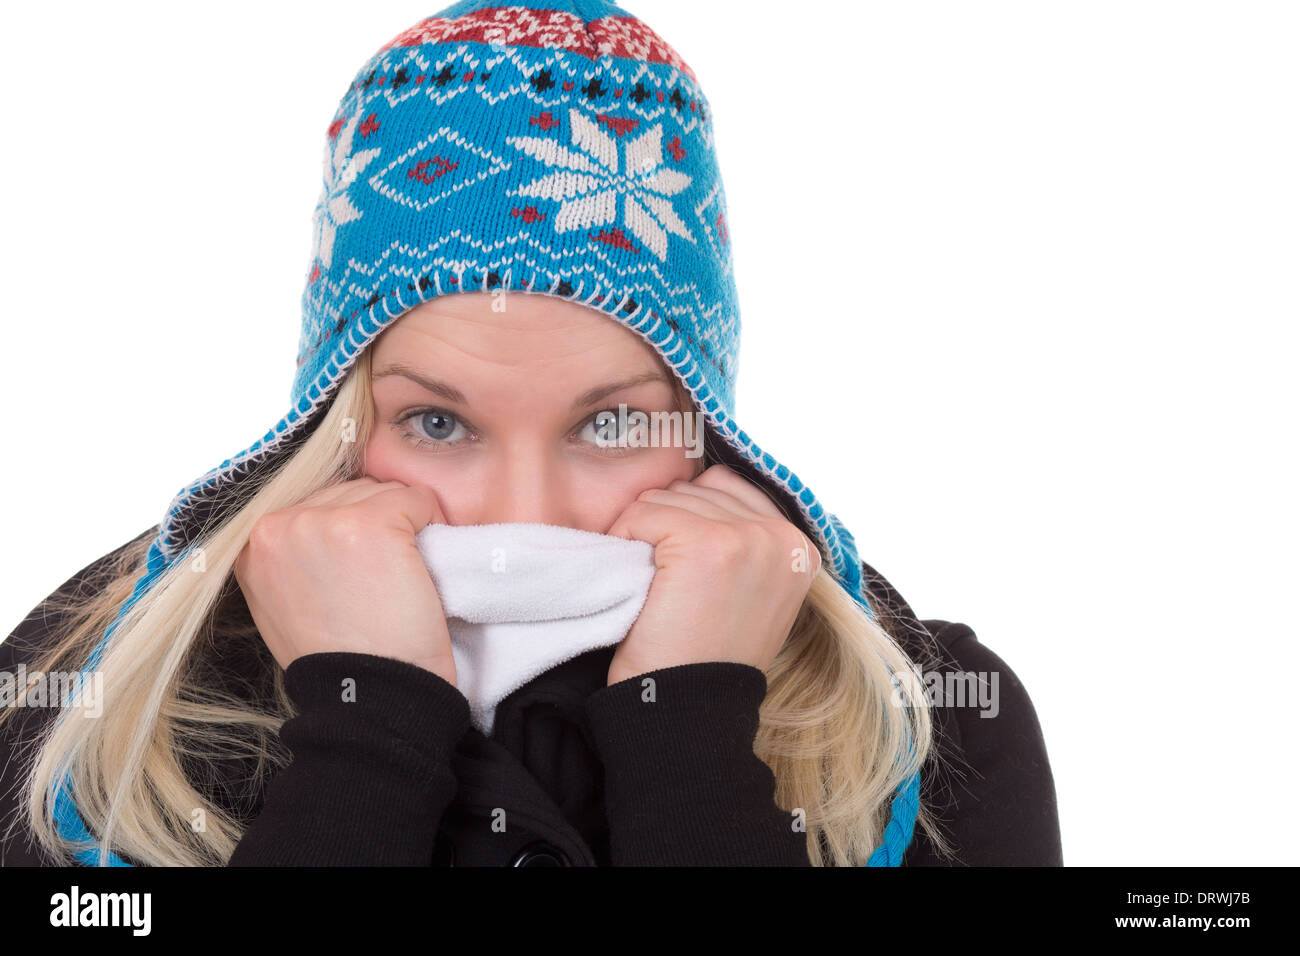 Ritratto di una donna bionda in inverno freddo con guanti e sciarpa, isolato su sfondo bianco Foto Stock